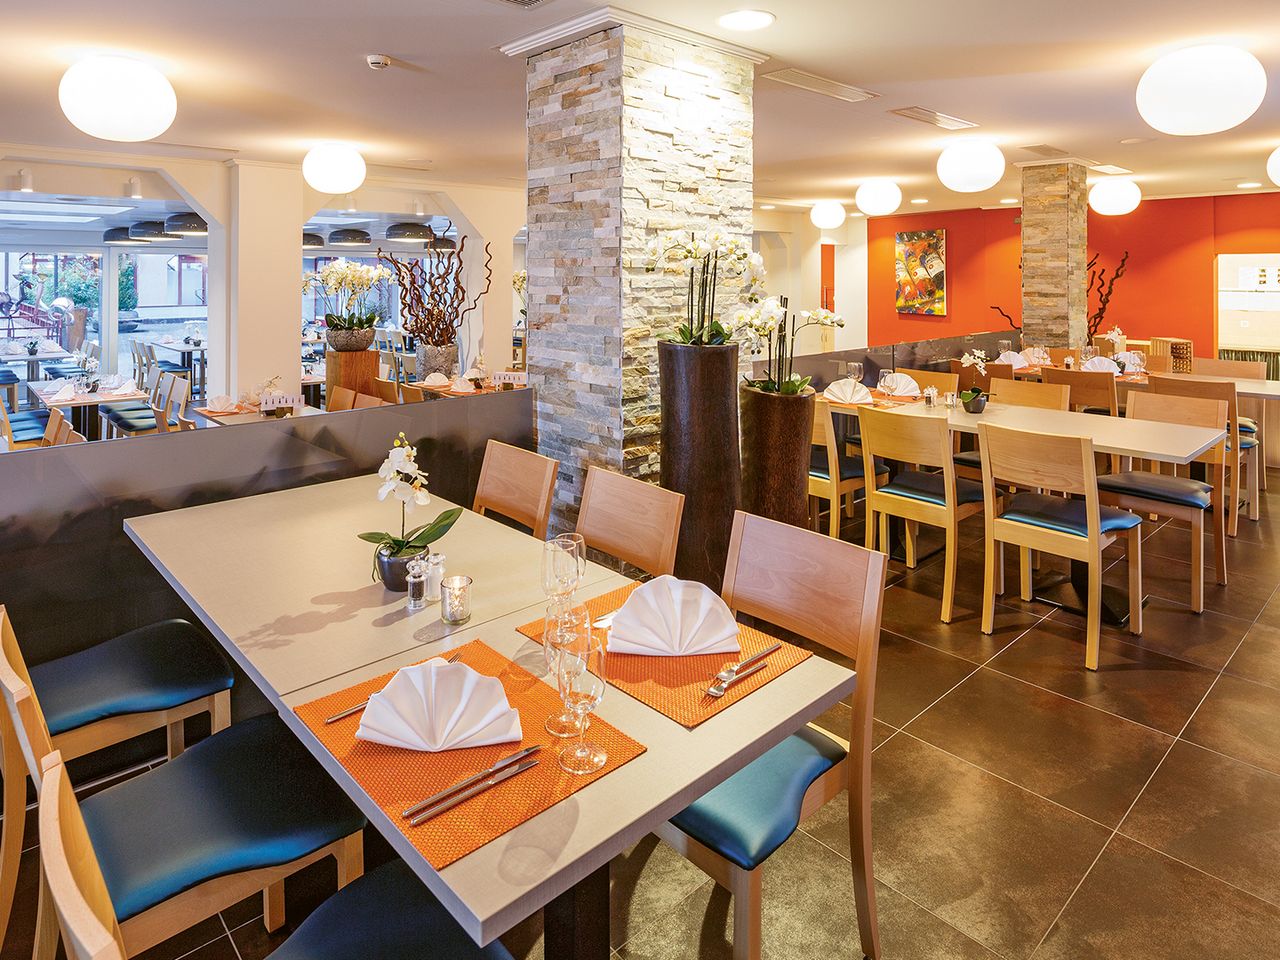 Das Hotel Olten bietet den Gästen eine moderne, gutbürgerliche Küche.